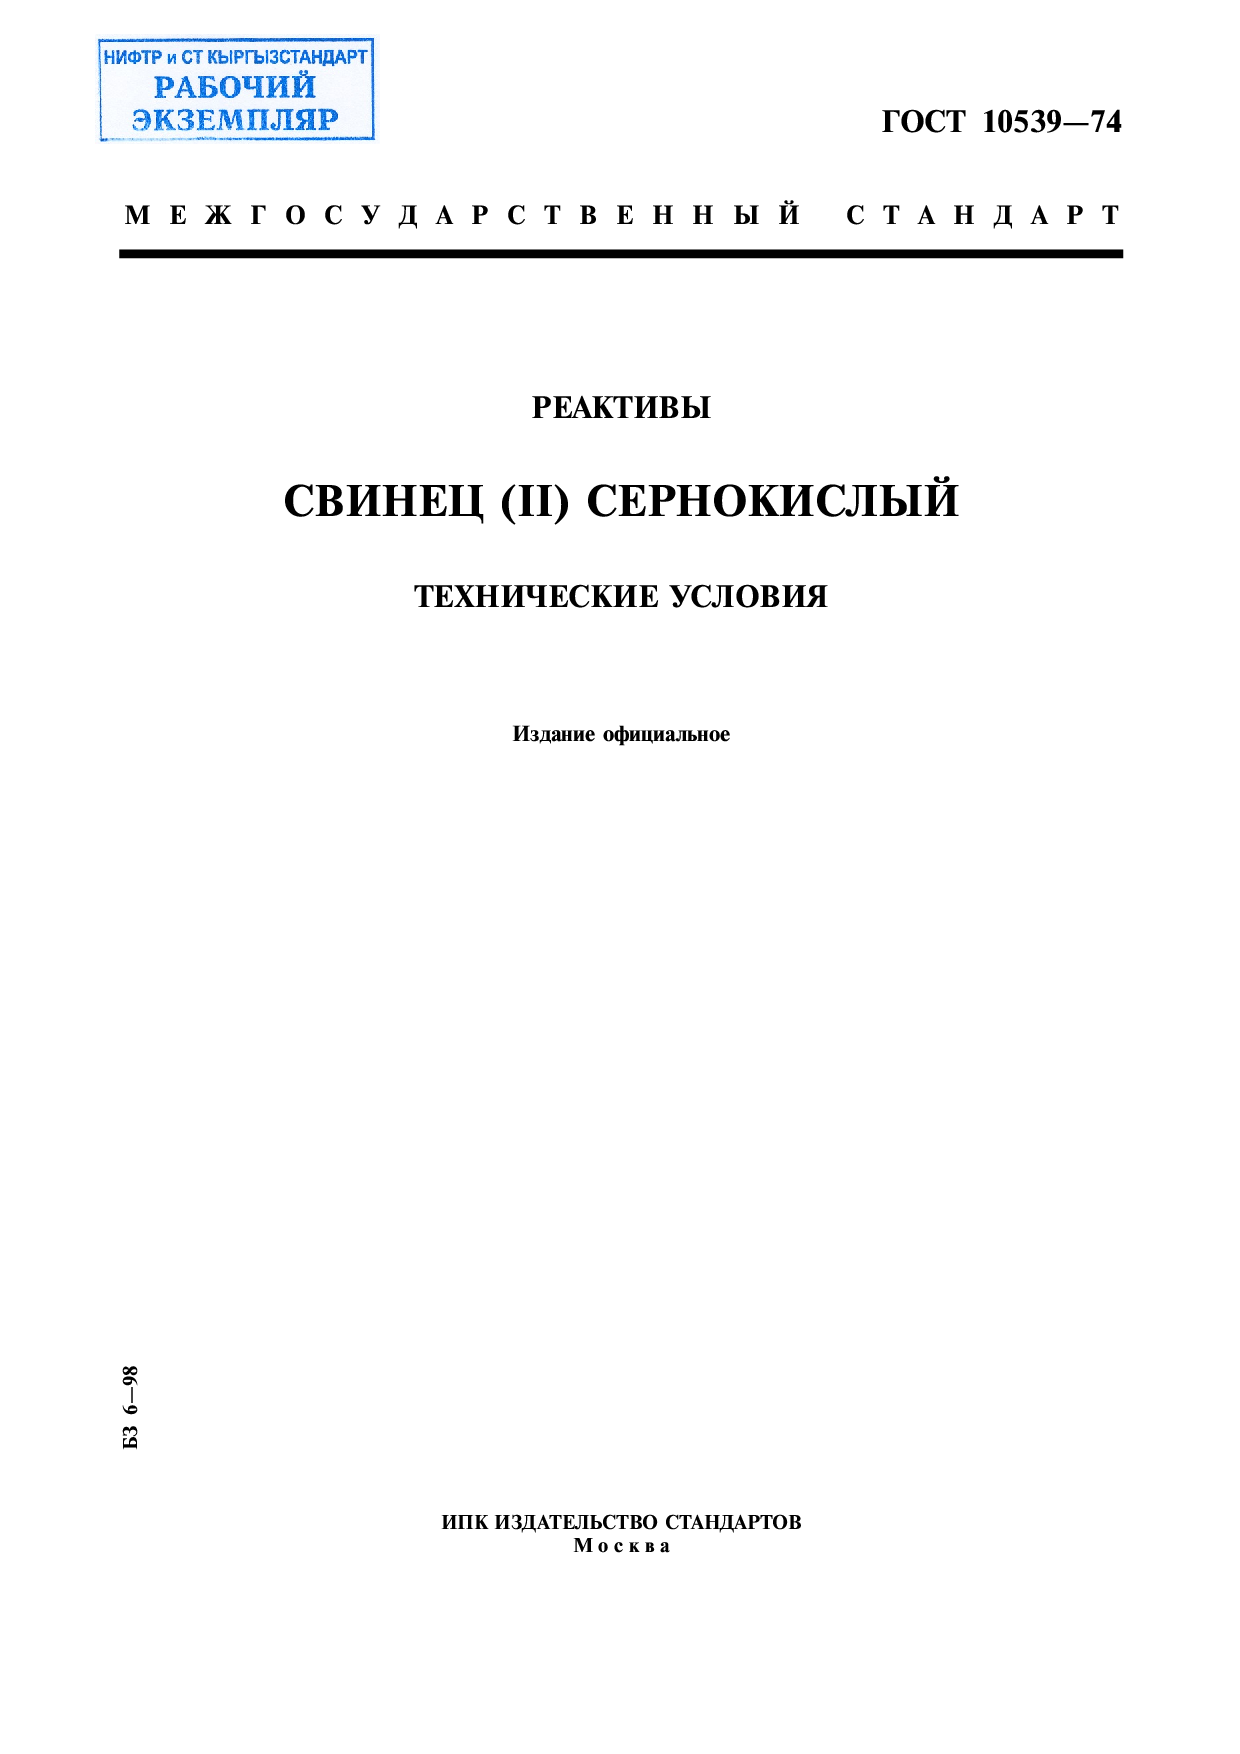 Реактивы. Свинец (II) сернокислый. Технические условия